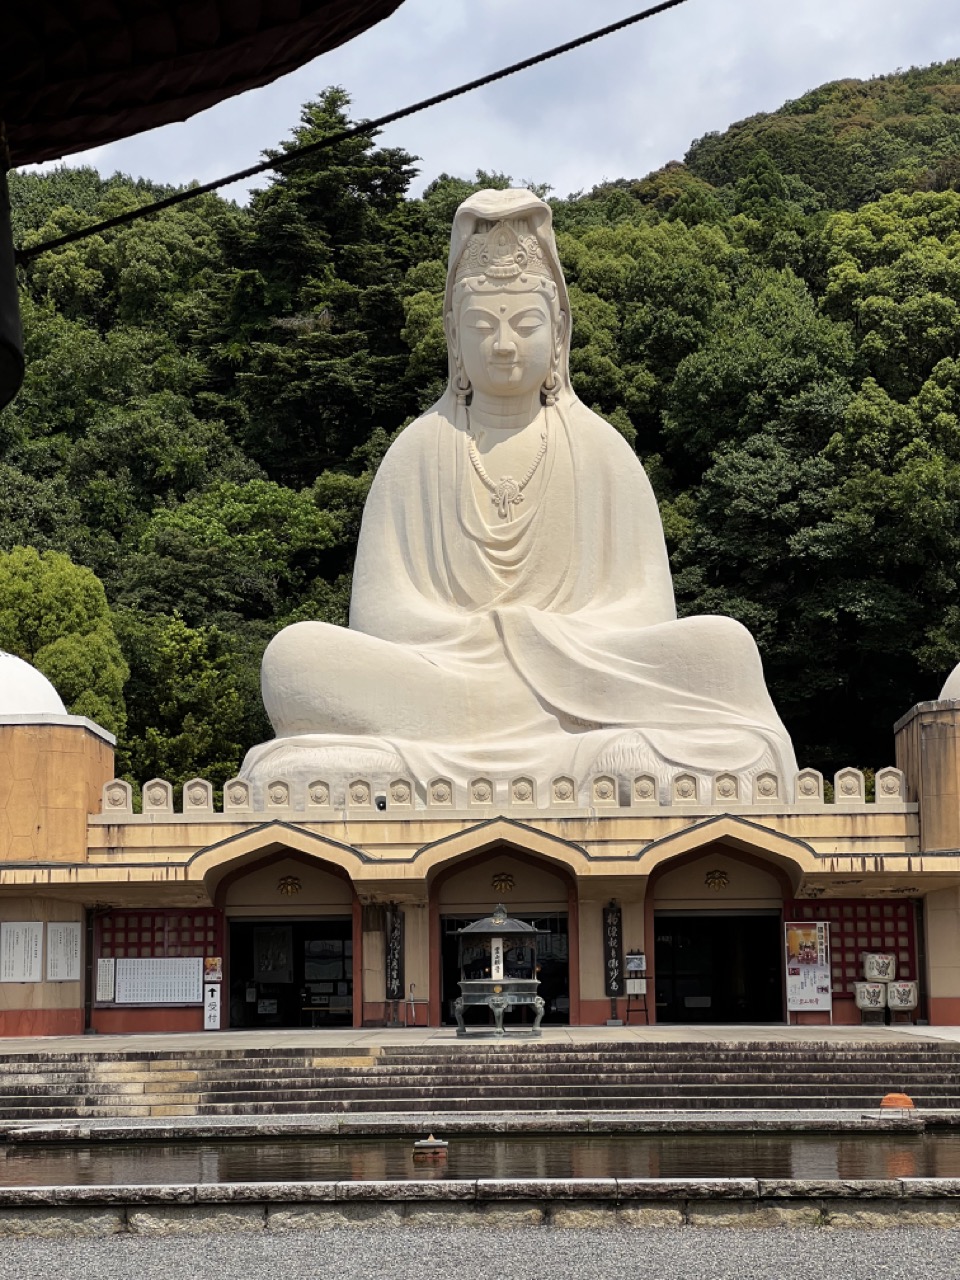 Entrance veiw of Ryozen Kannon statue.